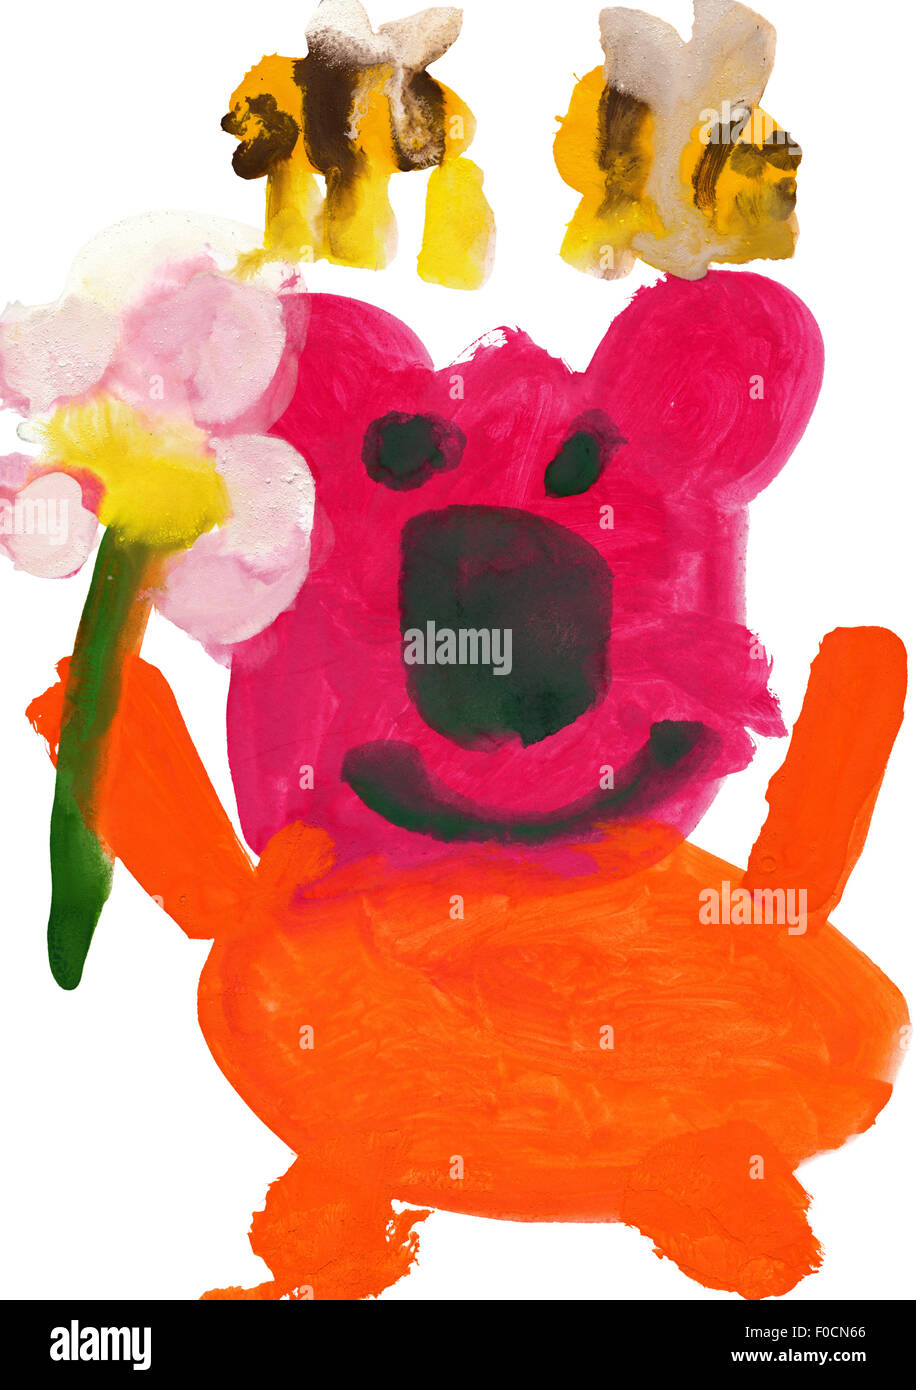 Dessin d'enfant à l'aquarelle. Avec l'ours et les abeilles de fleurs Banque D'Images